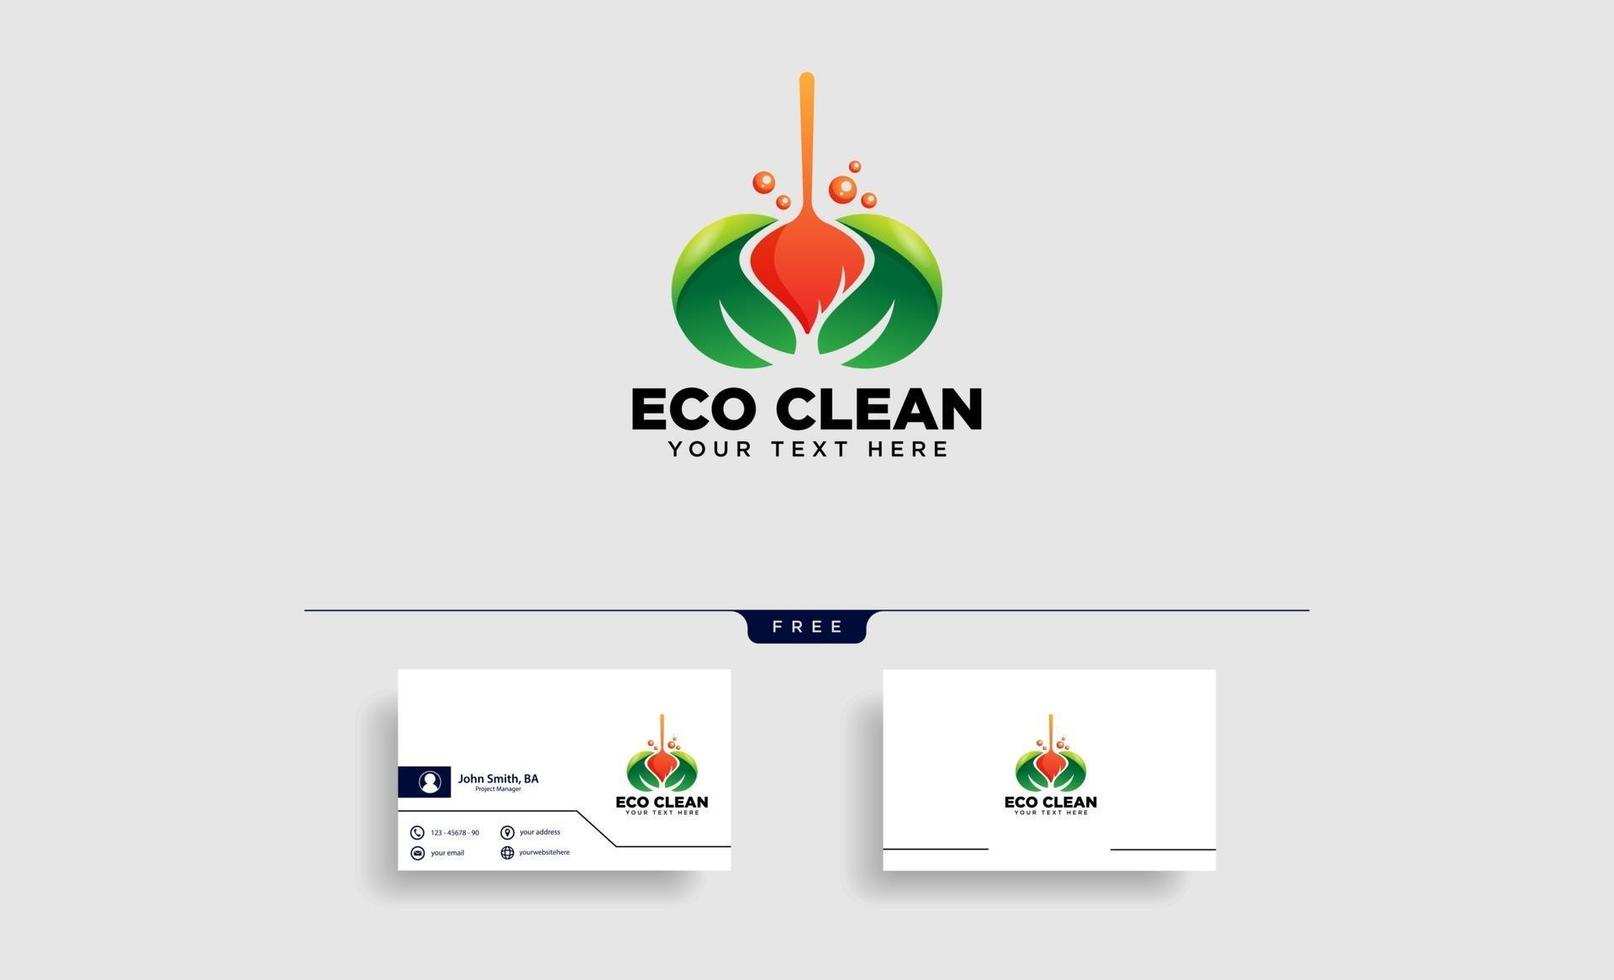 servicio de limpieza casa eco logo plantilla vector ilustración icono elemento vector aislado